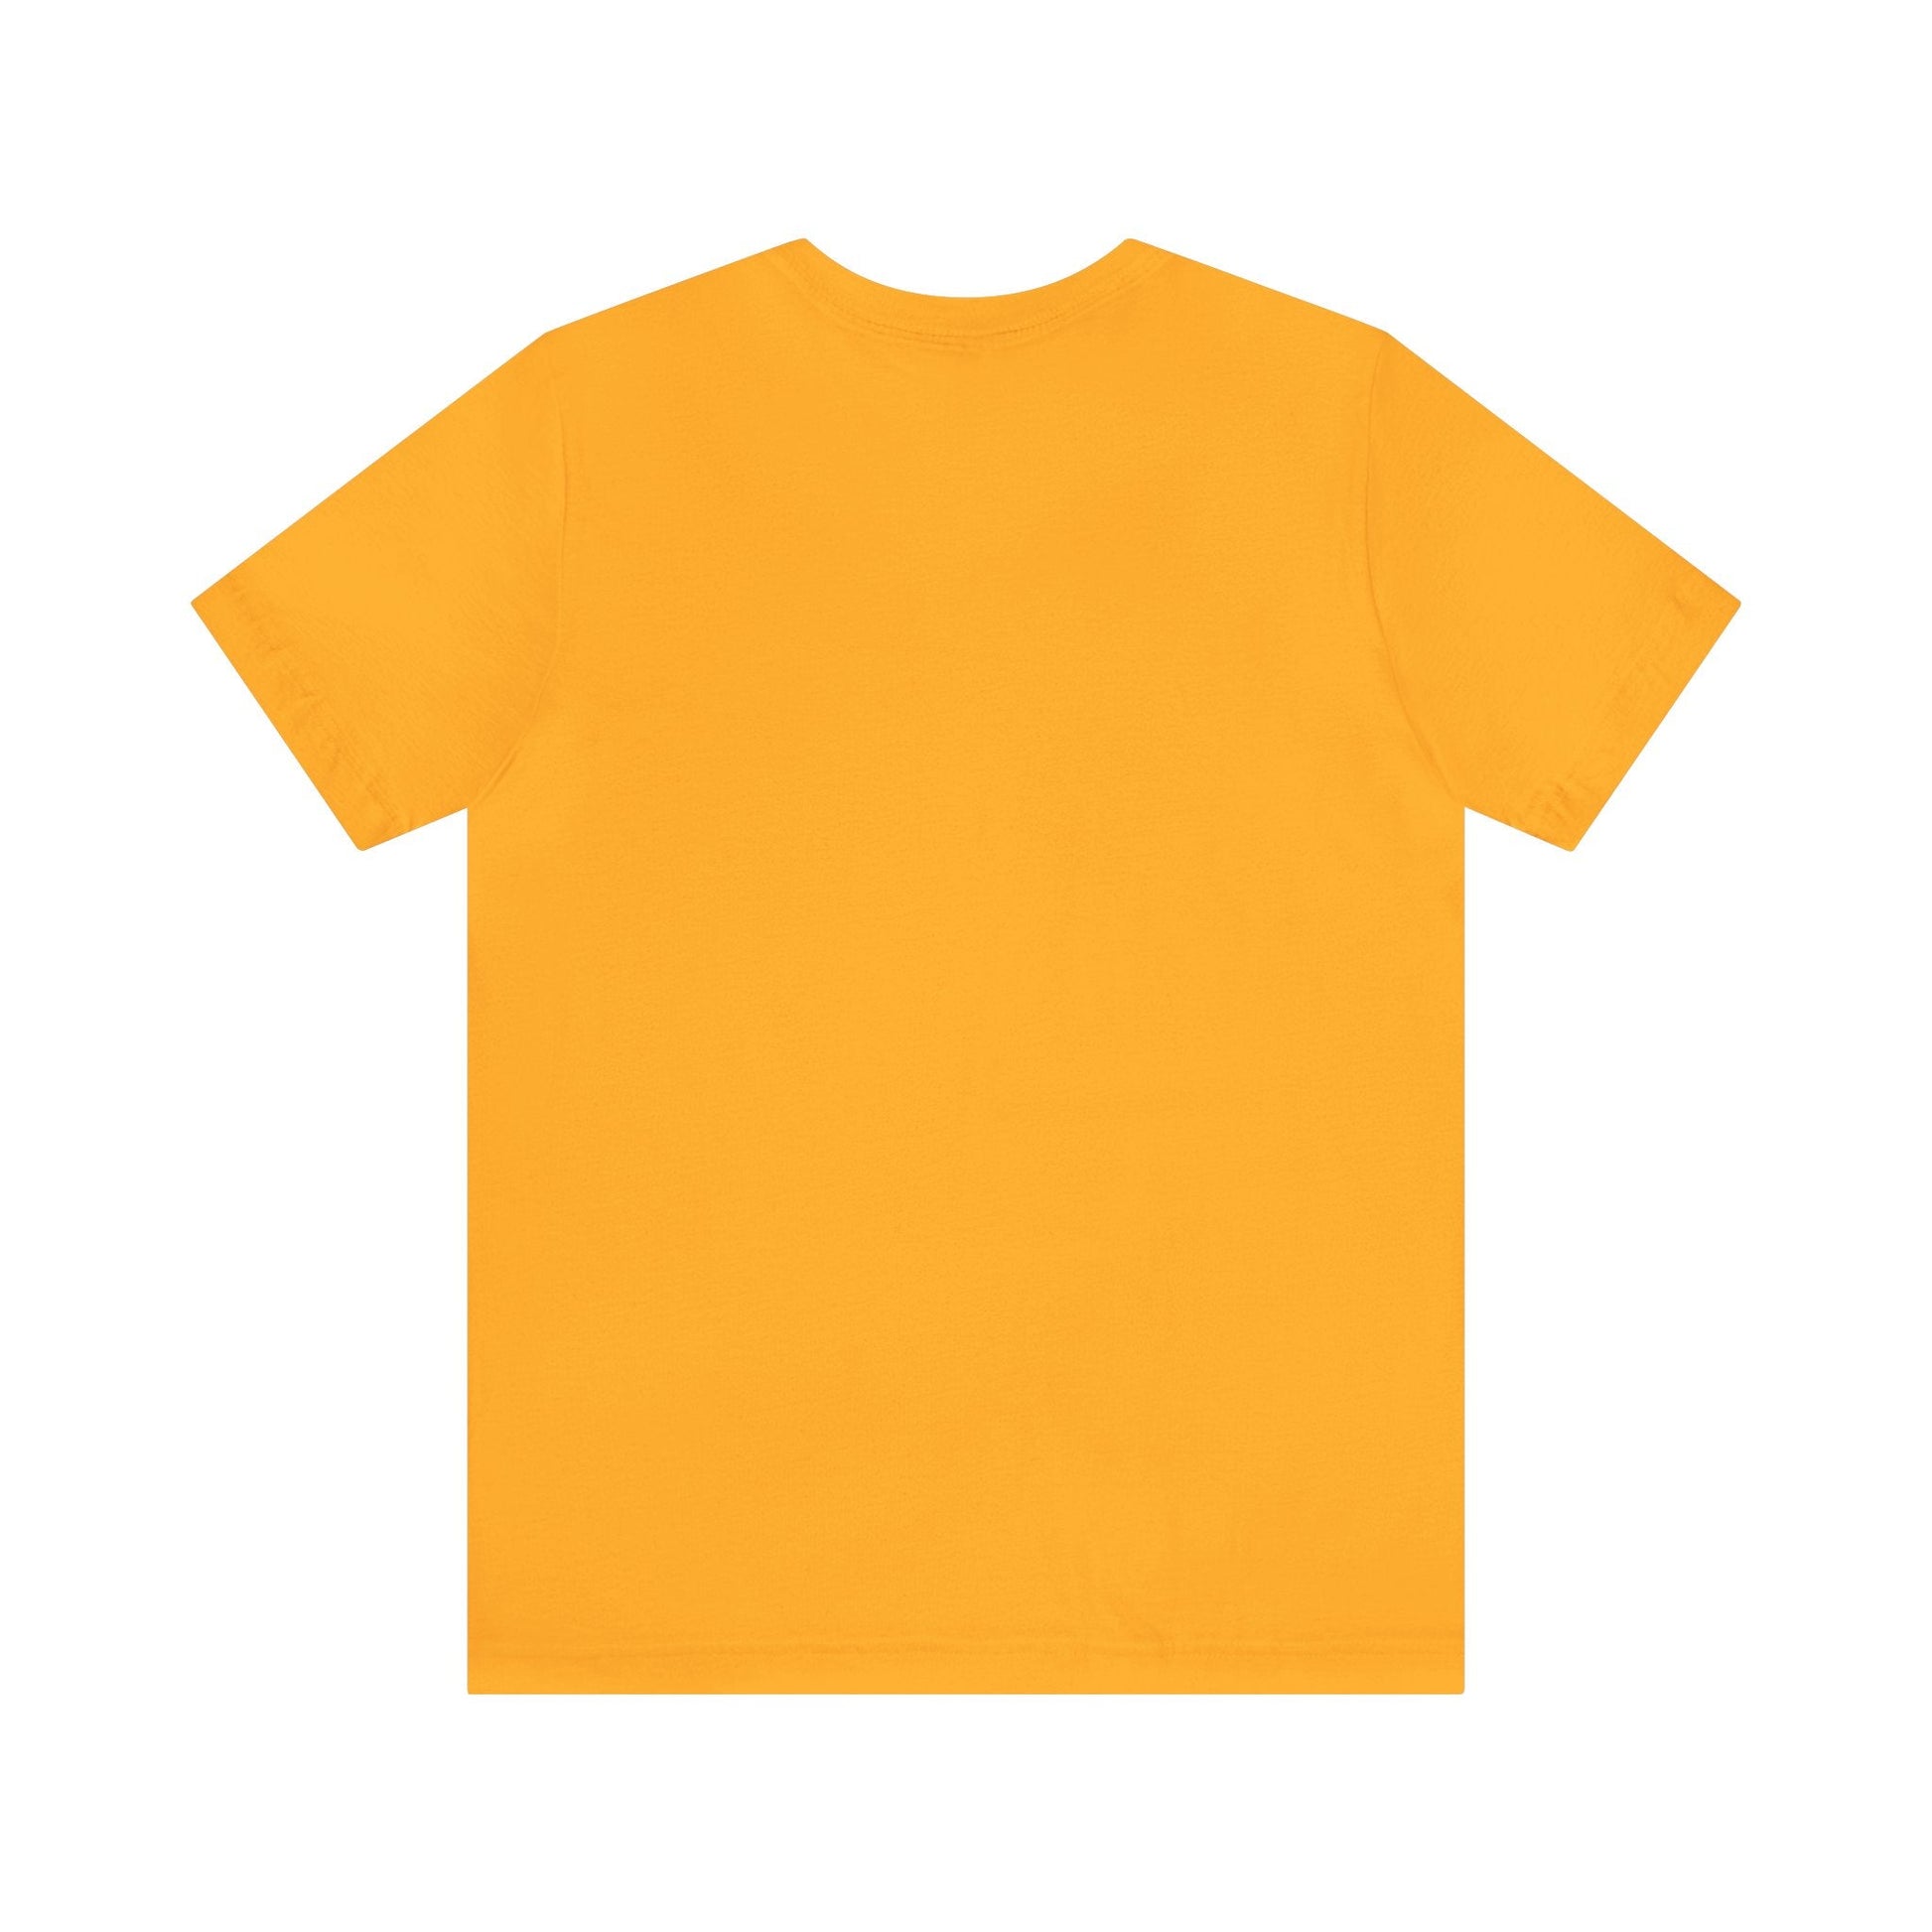 T-Shirt - I Just Love Golden Retrievers Unisex Jersey Short Sleeve Tee